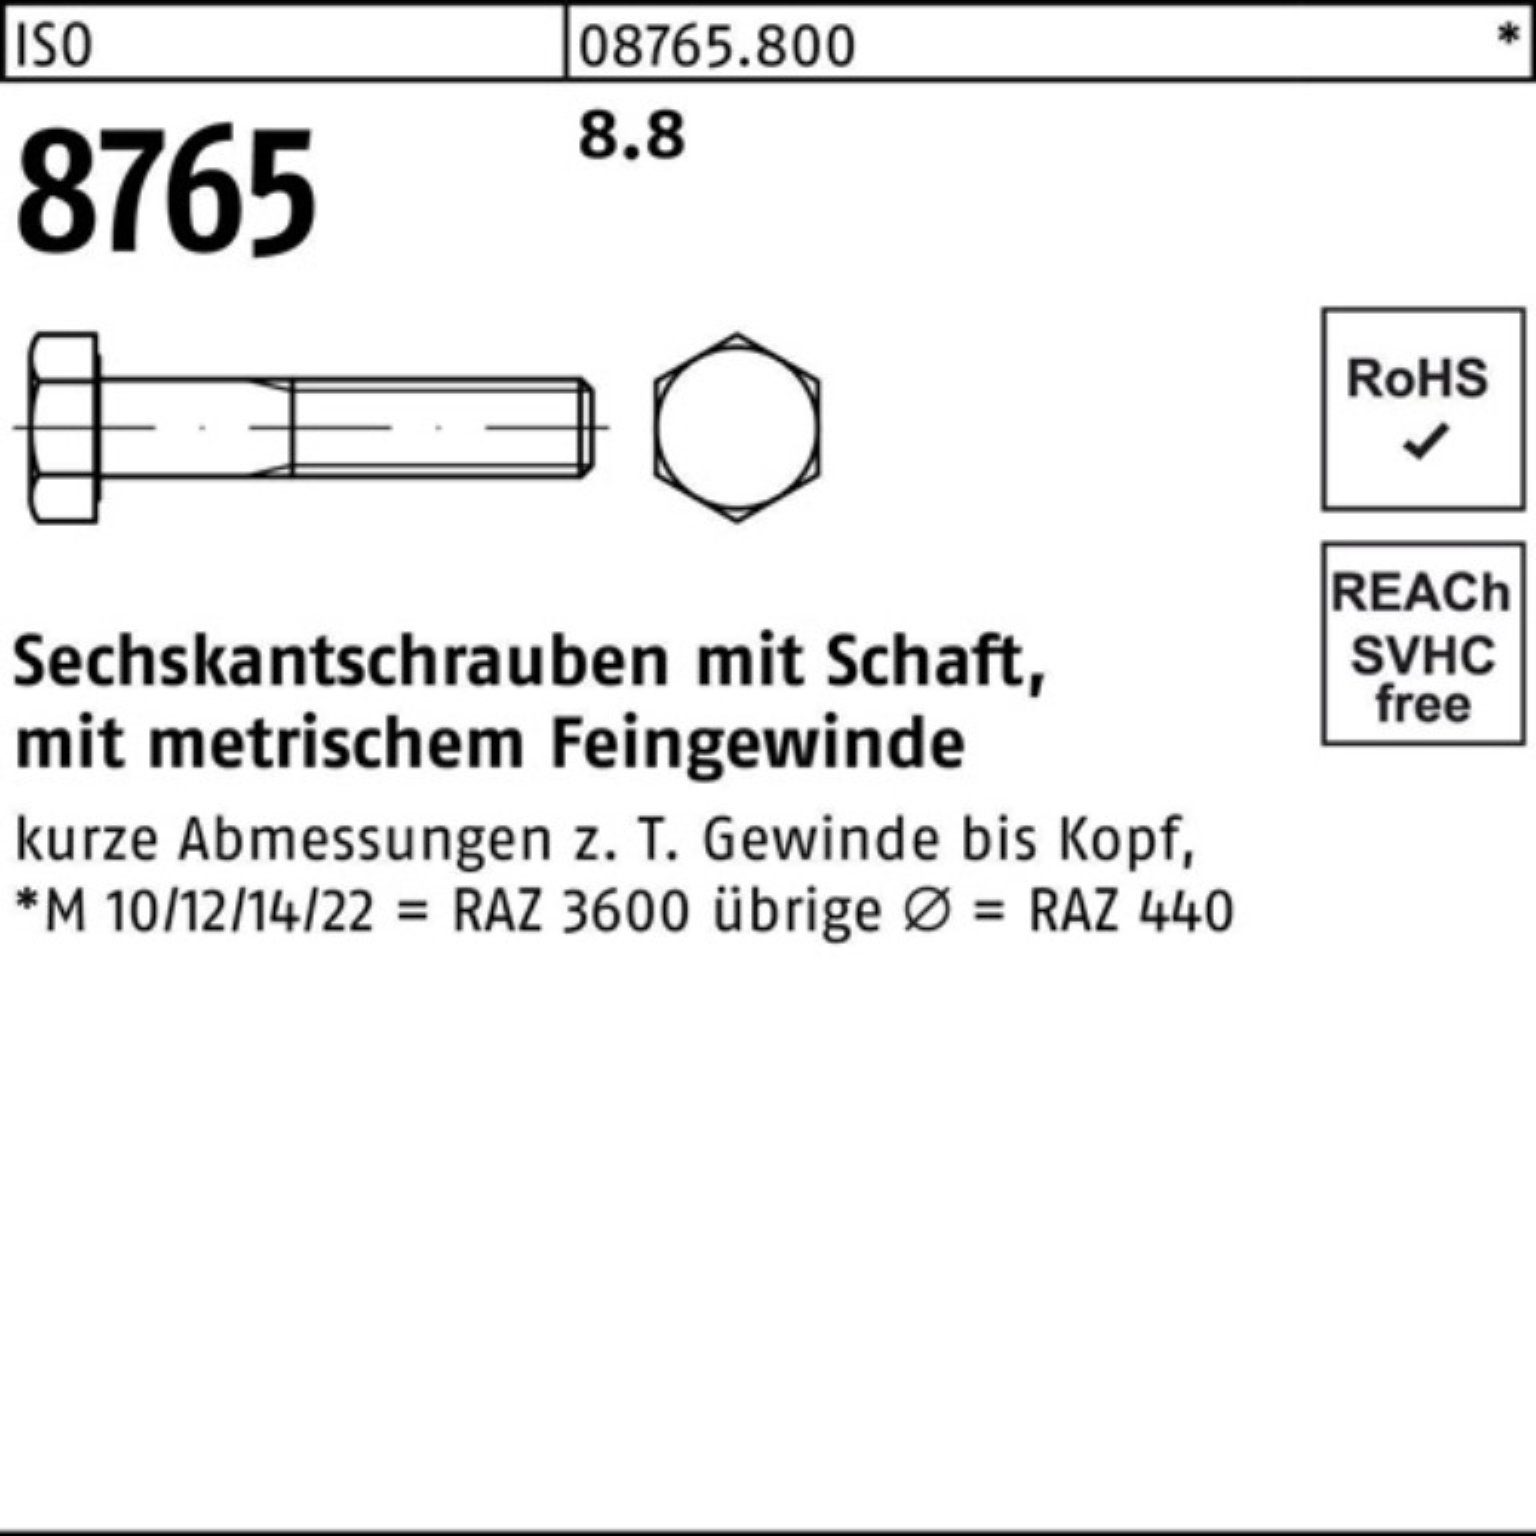 Reyher Sechskantschraube 100er M12x1,25x130 Pack 8765 ISO 8.8 Stüc Sechskantschraube 50 Schaft